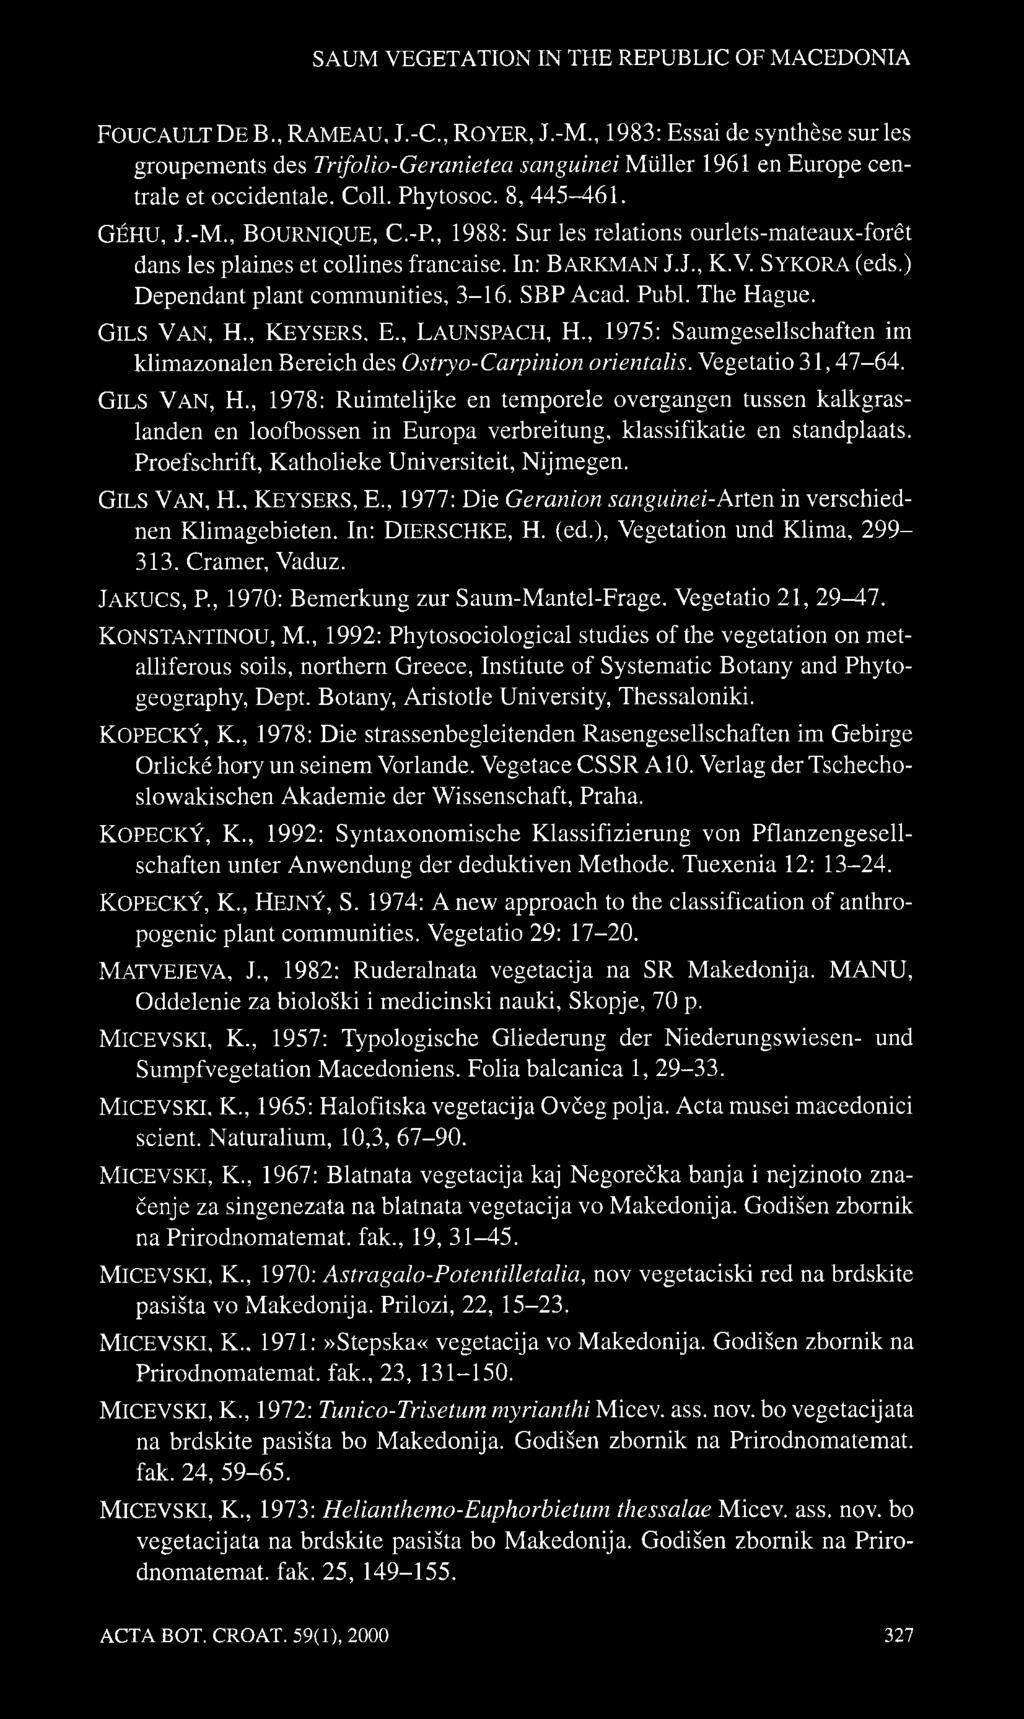 -R, 1988: Sur les relations ourlets-mateaux-forêt dans les plaines et collines française. In: BARKMAN J.J., K.V. SYKORA (eds.) Dependant plant communities, -16. SBP Acad. Publ. The Hague. GILS VAN, H.